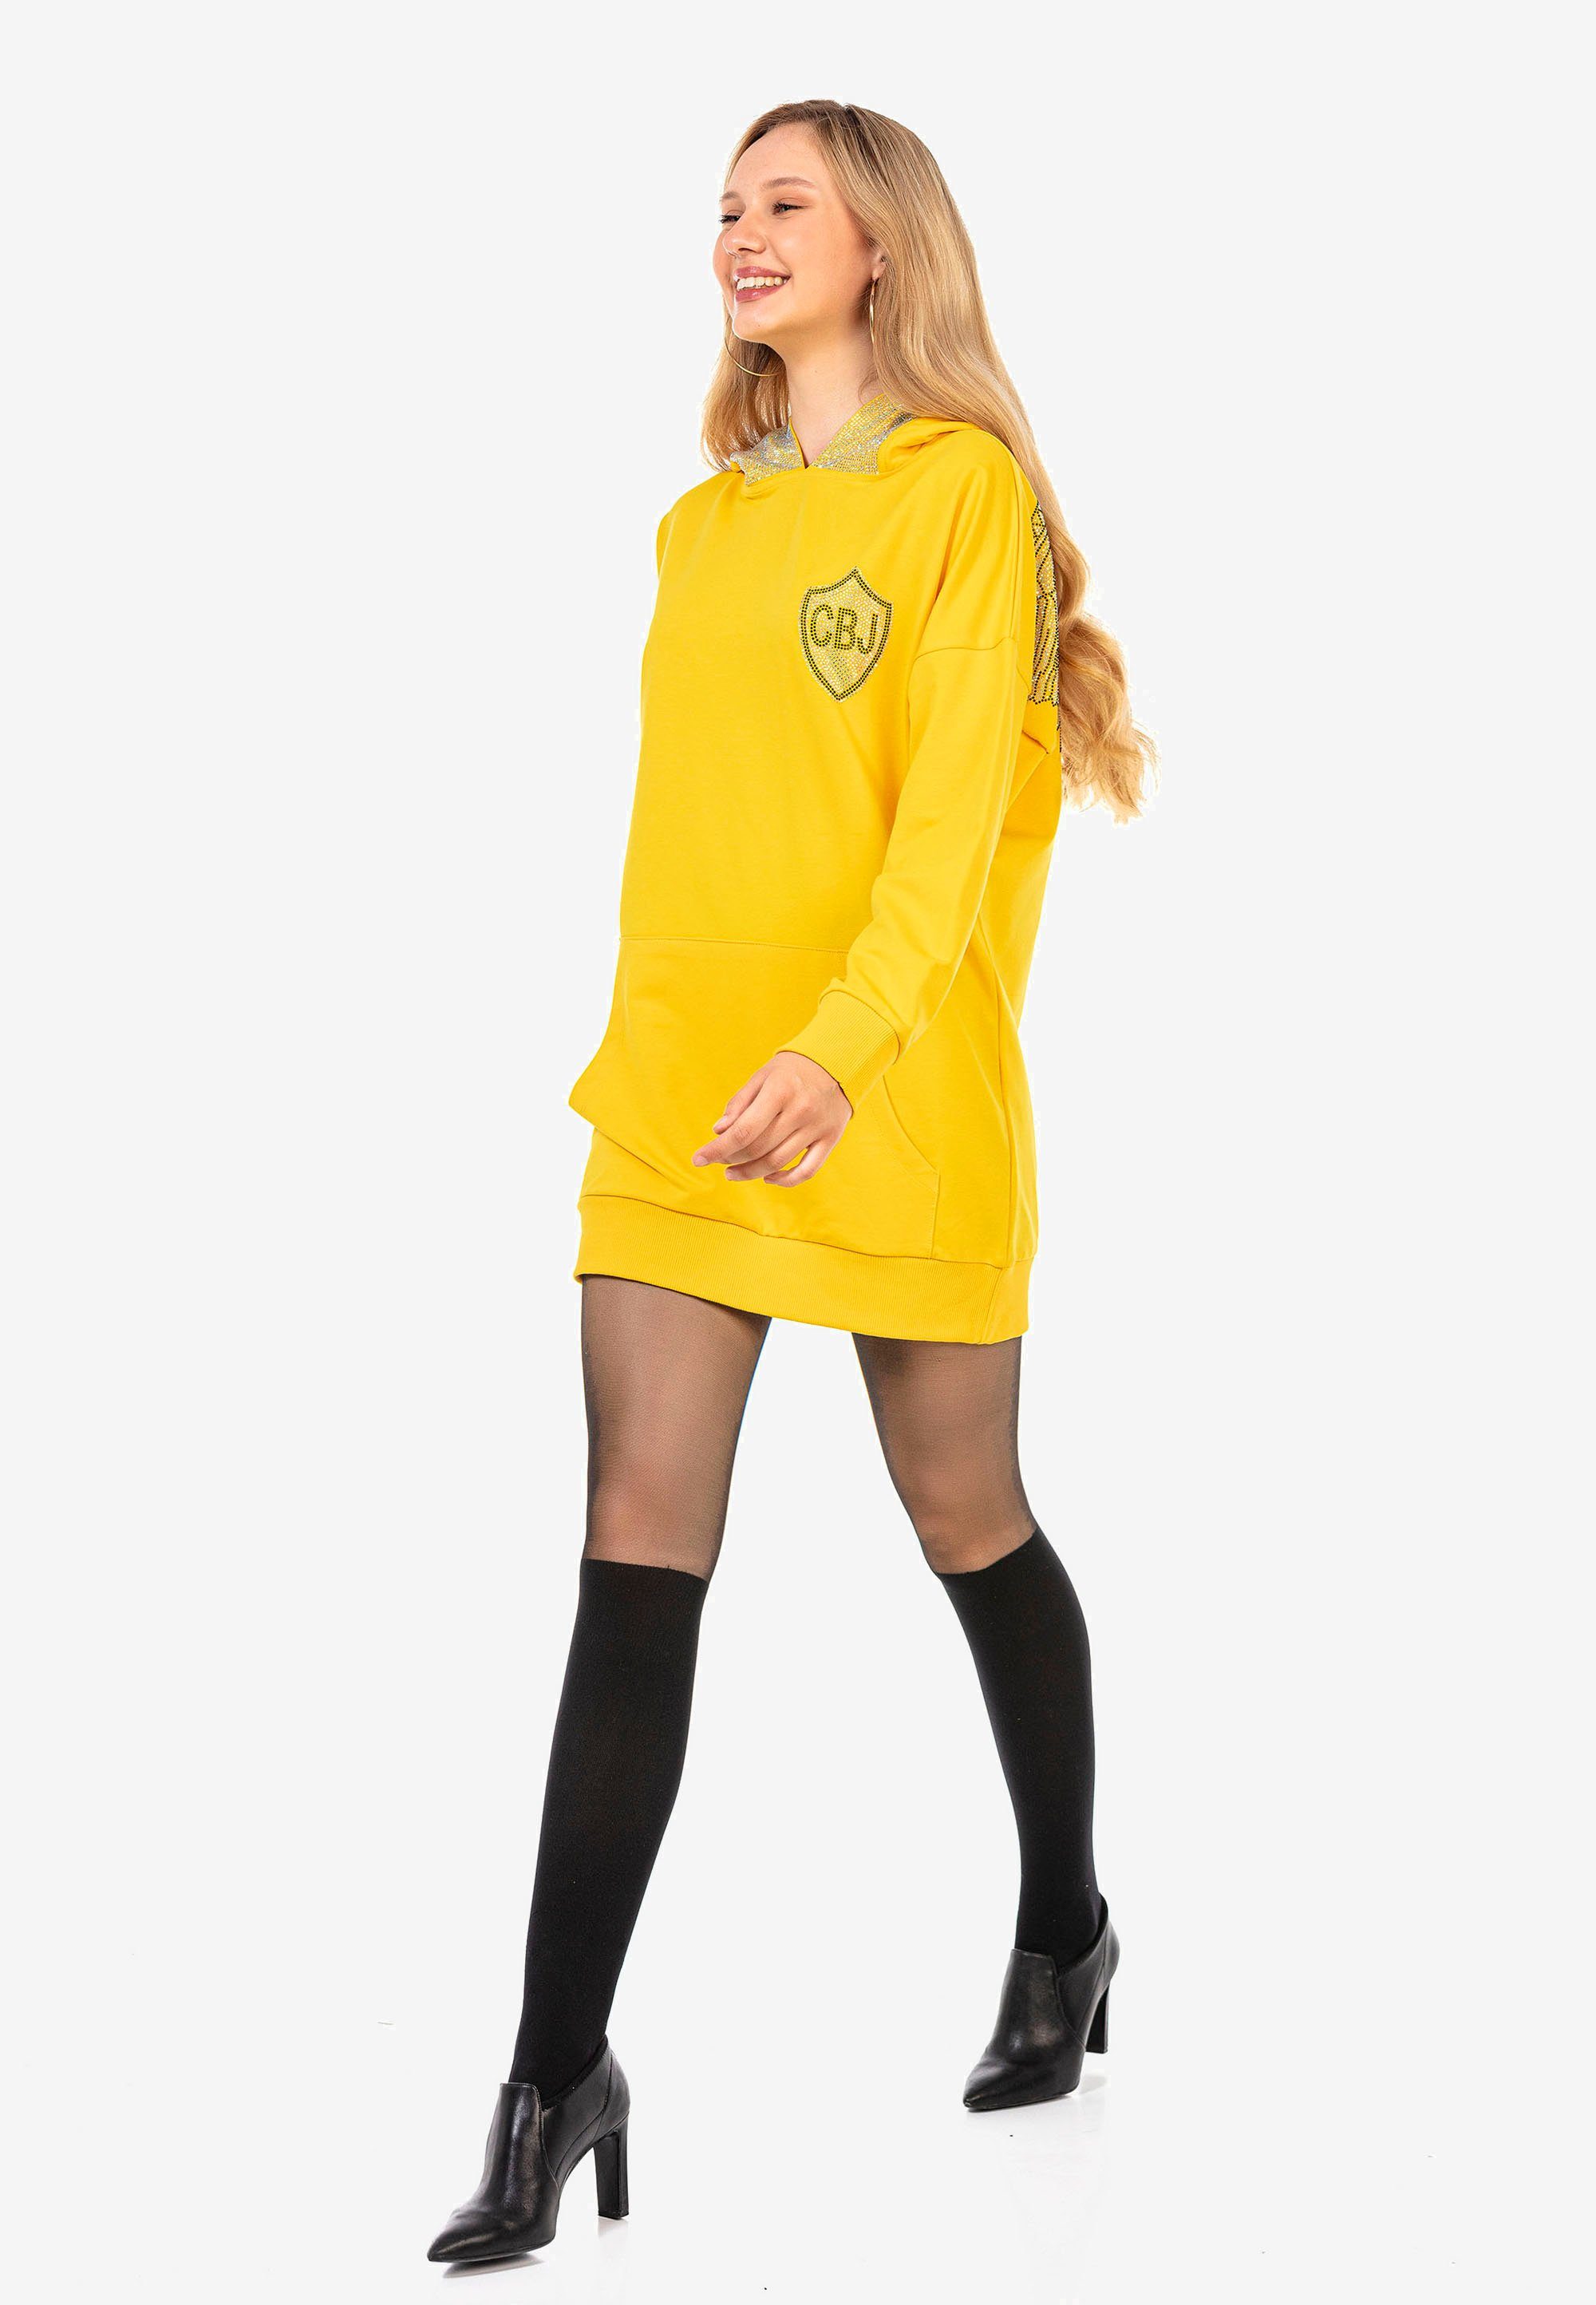 Cipo & Baxx Strass-Design gelb aufwendigem Jerseykleid mit